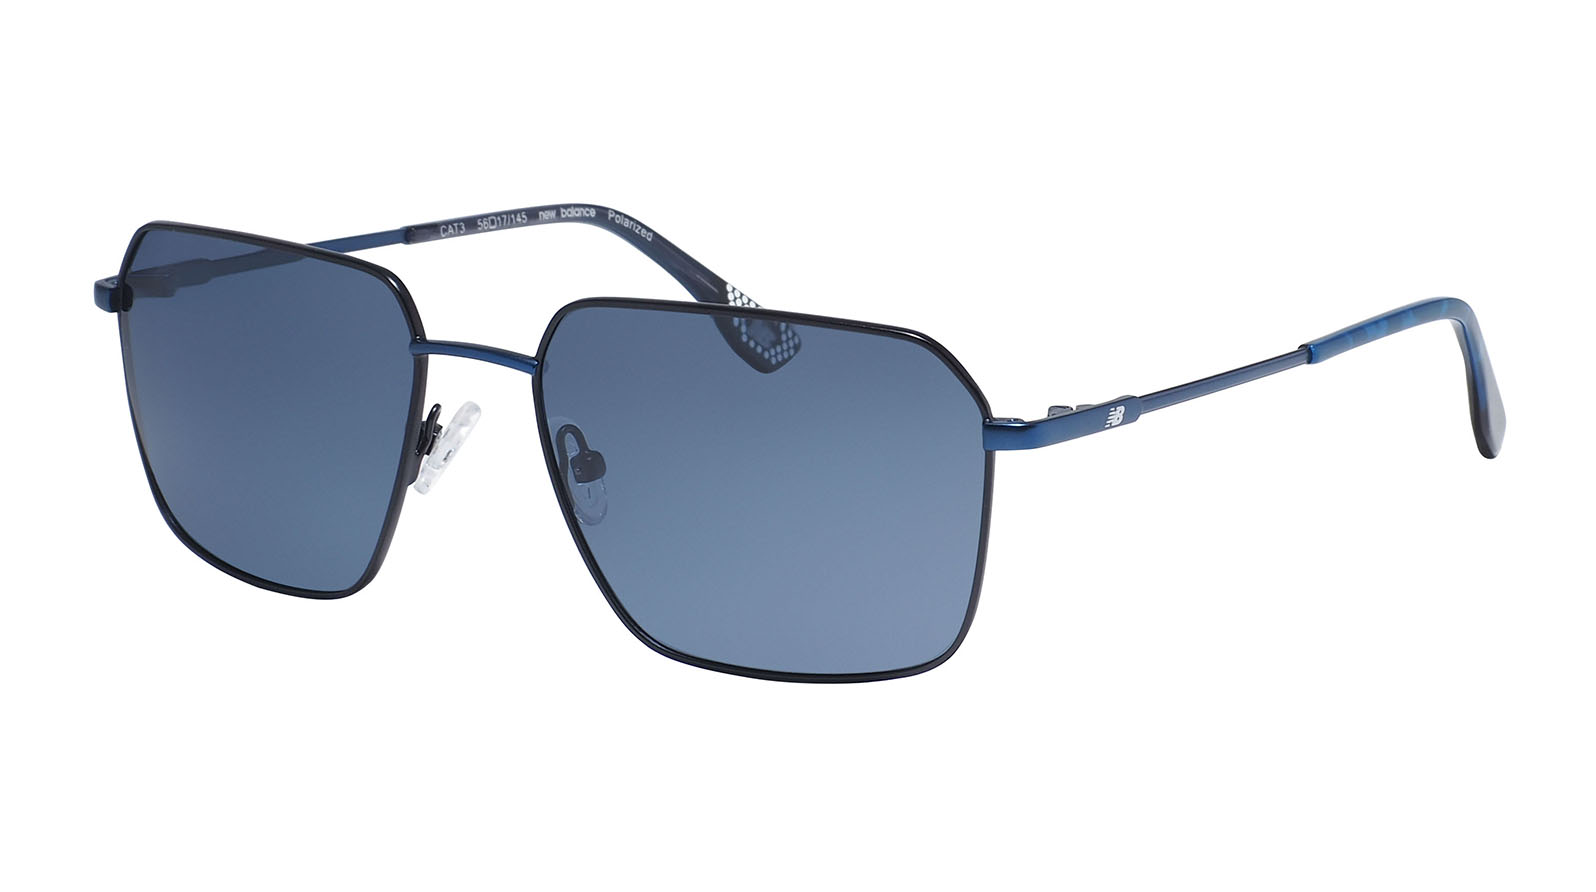 New Balance 6077 2 5 пар силиконовые носовые накладки для очков очки солнцезащитные очки очки очки